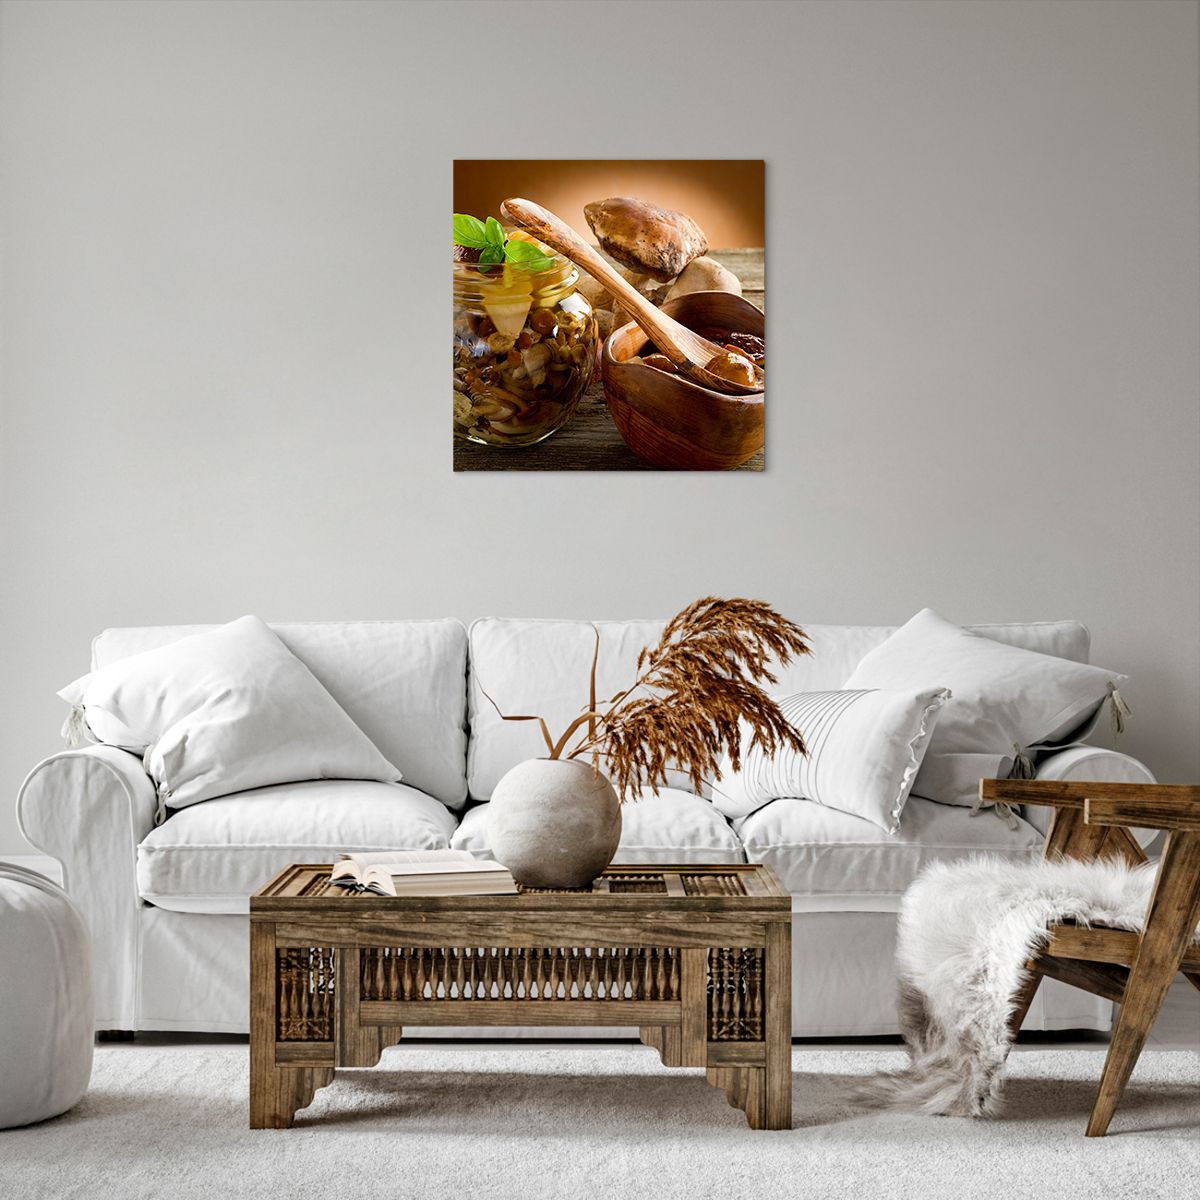 Bild auf Leinwand Gastronomie, Bild auf Leinwand Pilze, Bild auf Leinwand Küche, Bild auf Leinwand Löffel, Bild auf Leinwand Waldernte